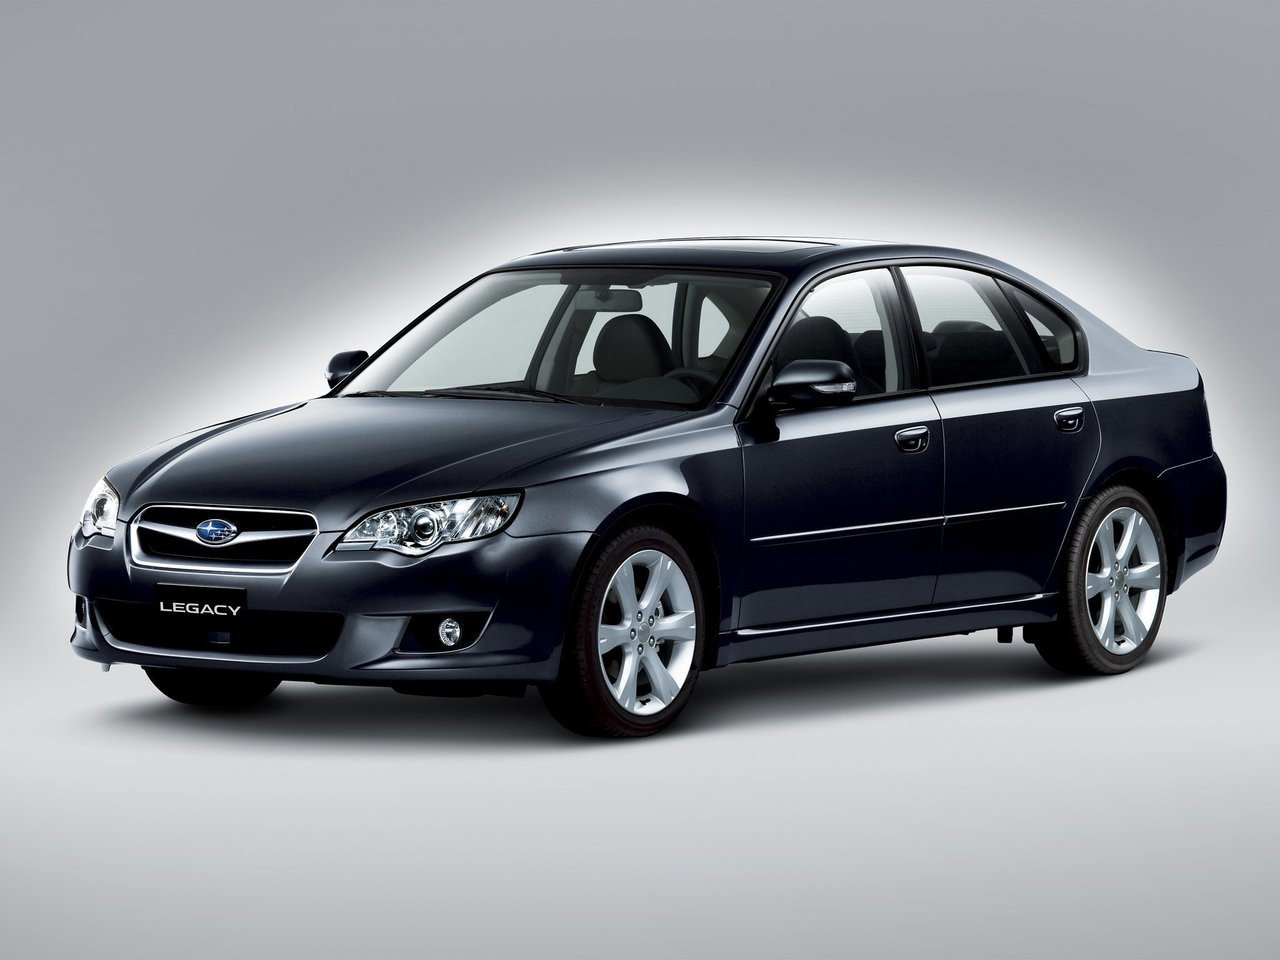 Расход газа шести комплектаций седана Subaru Legacy. Разница стоимости заправки газом и бензином. Автономный пробег до и после установки ГБО.